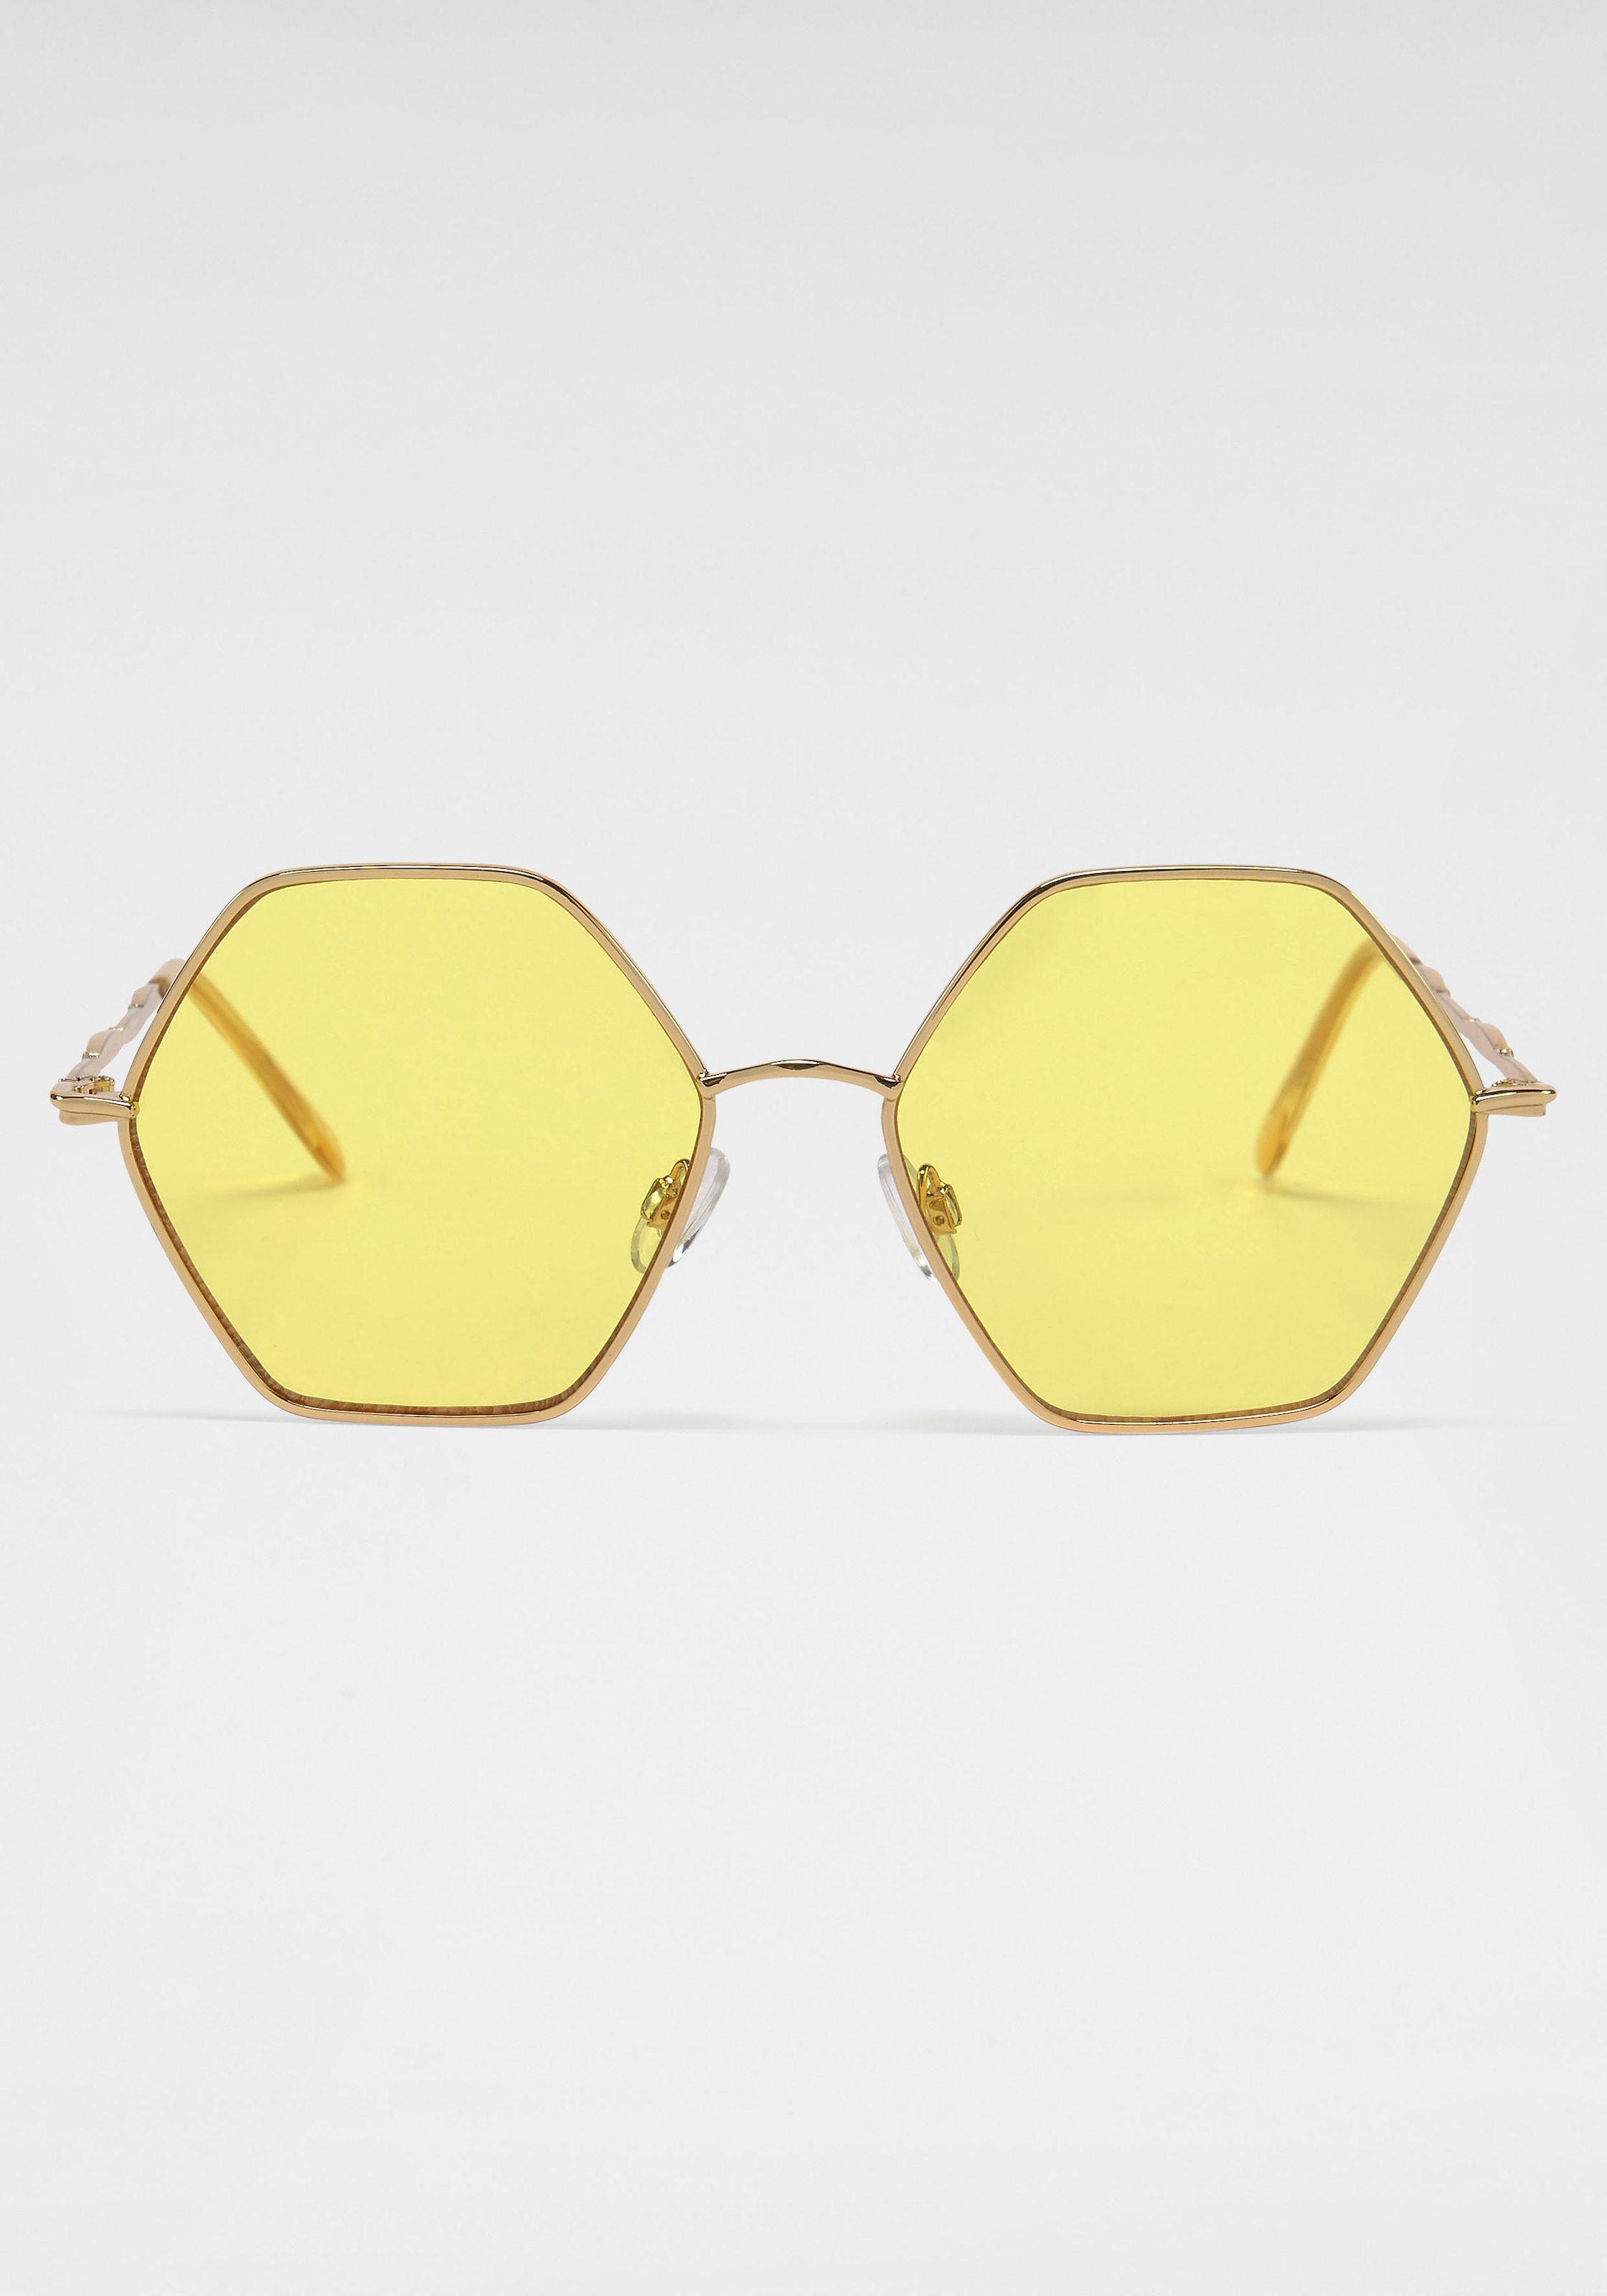 bestellen OTTO Eyewear SPIRIT YOUNG bei LONDON Sonnenbrille